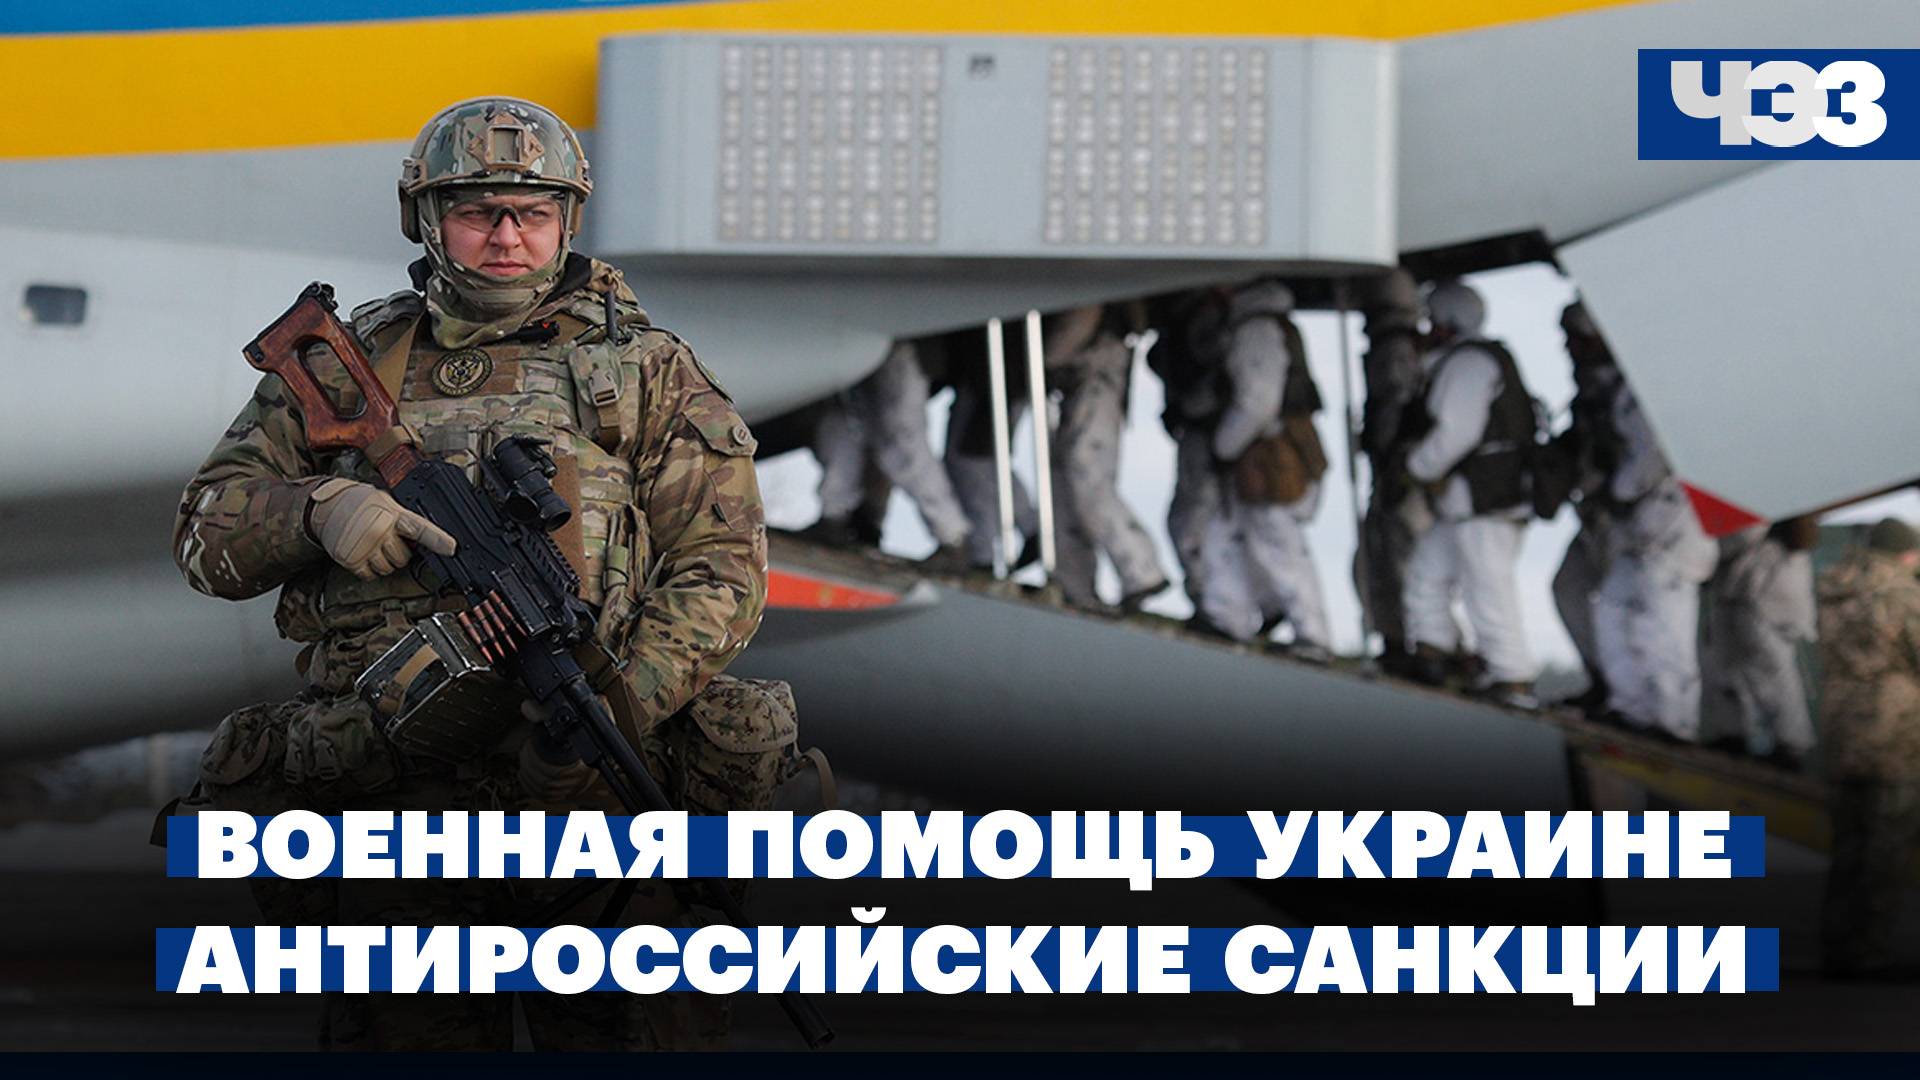 США выделили Украине очередную военную помощь. Новые антироссийские санкции